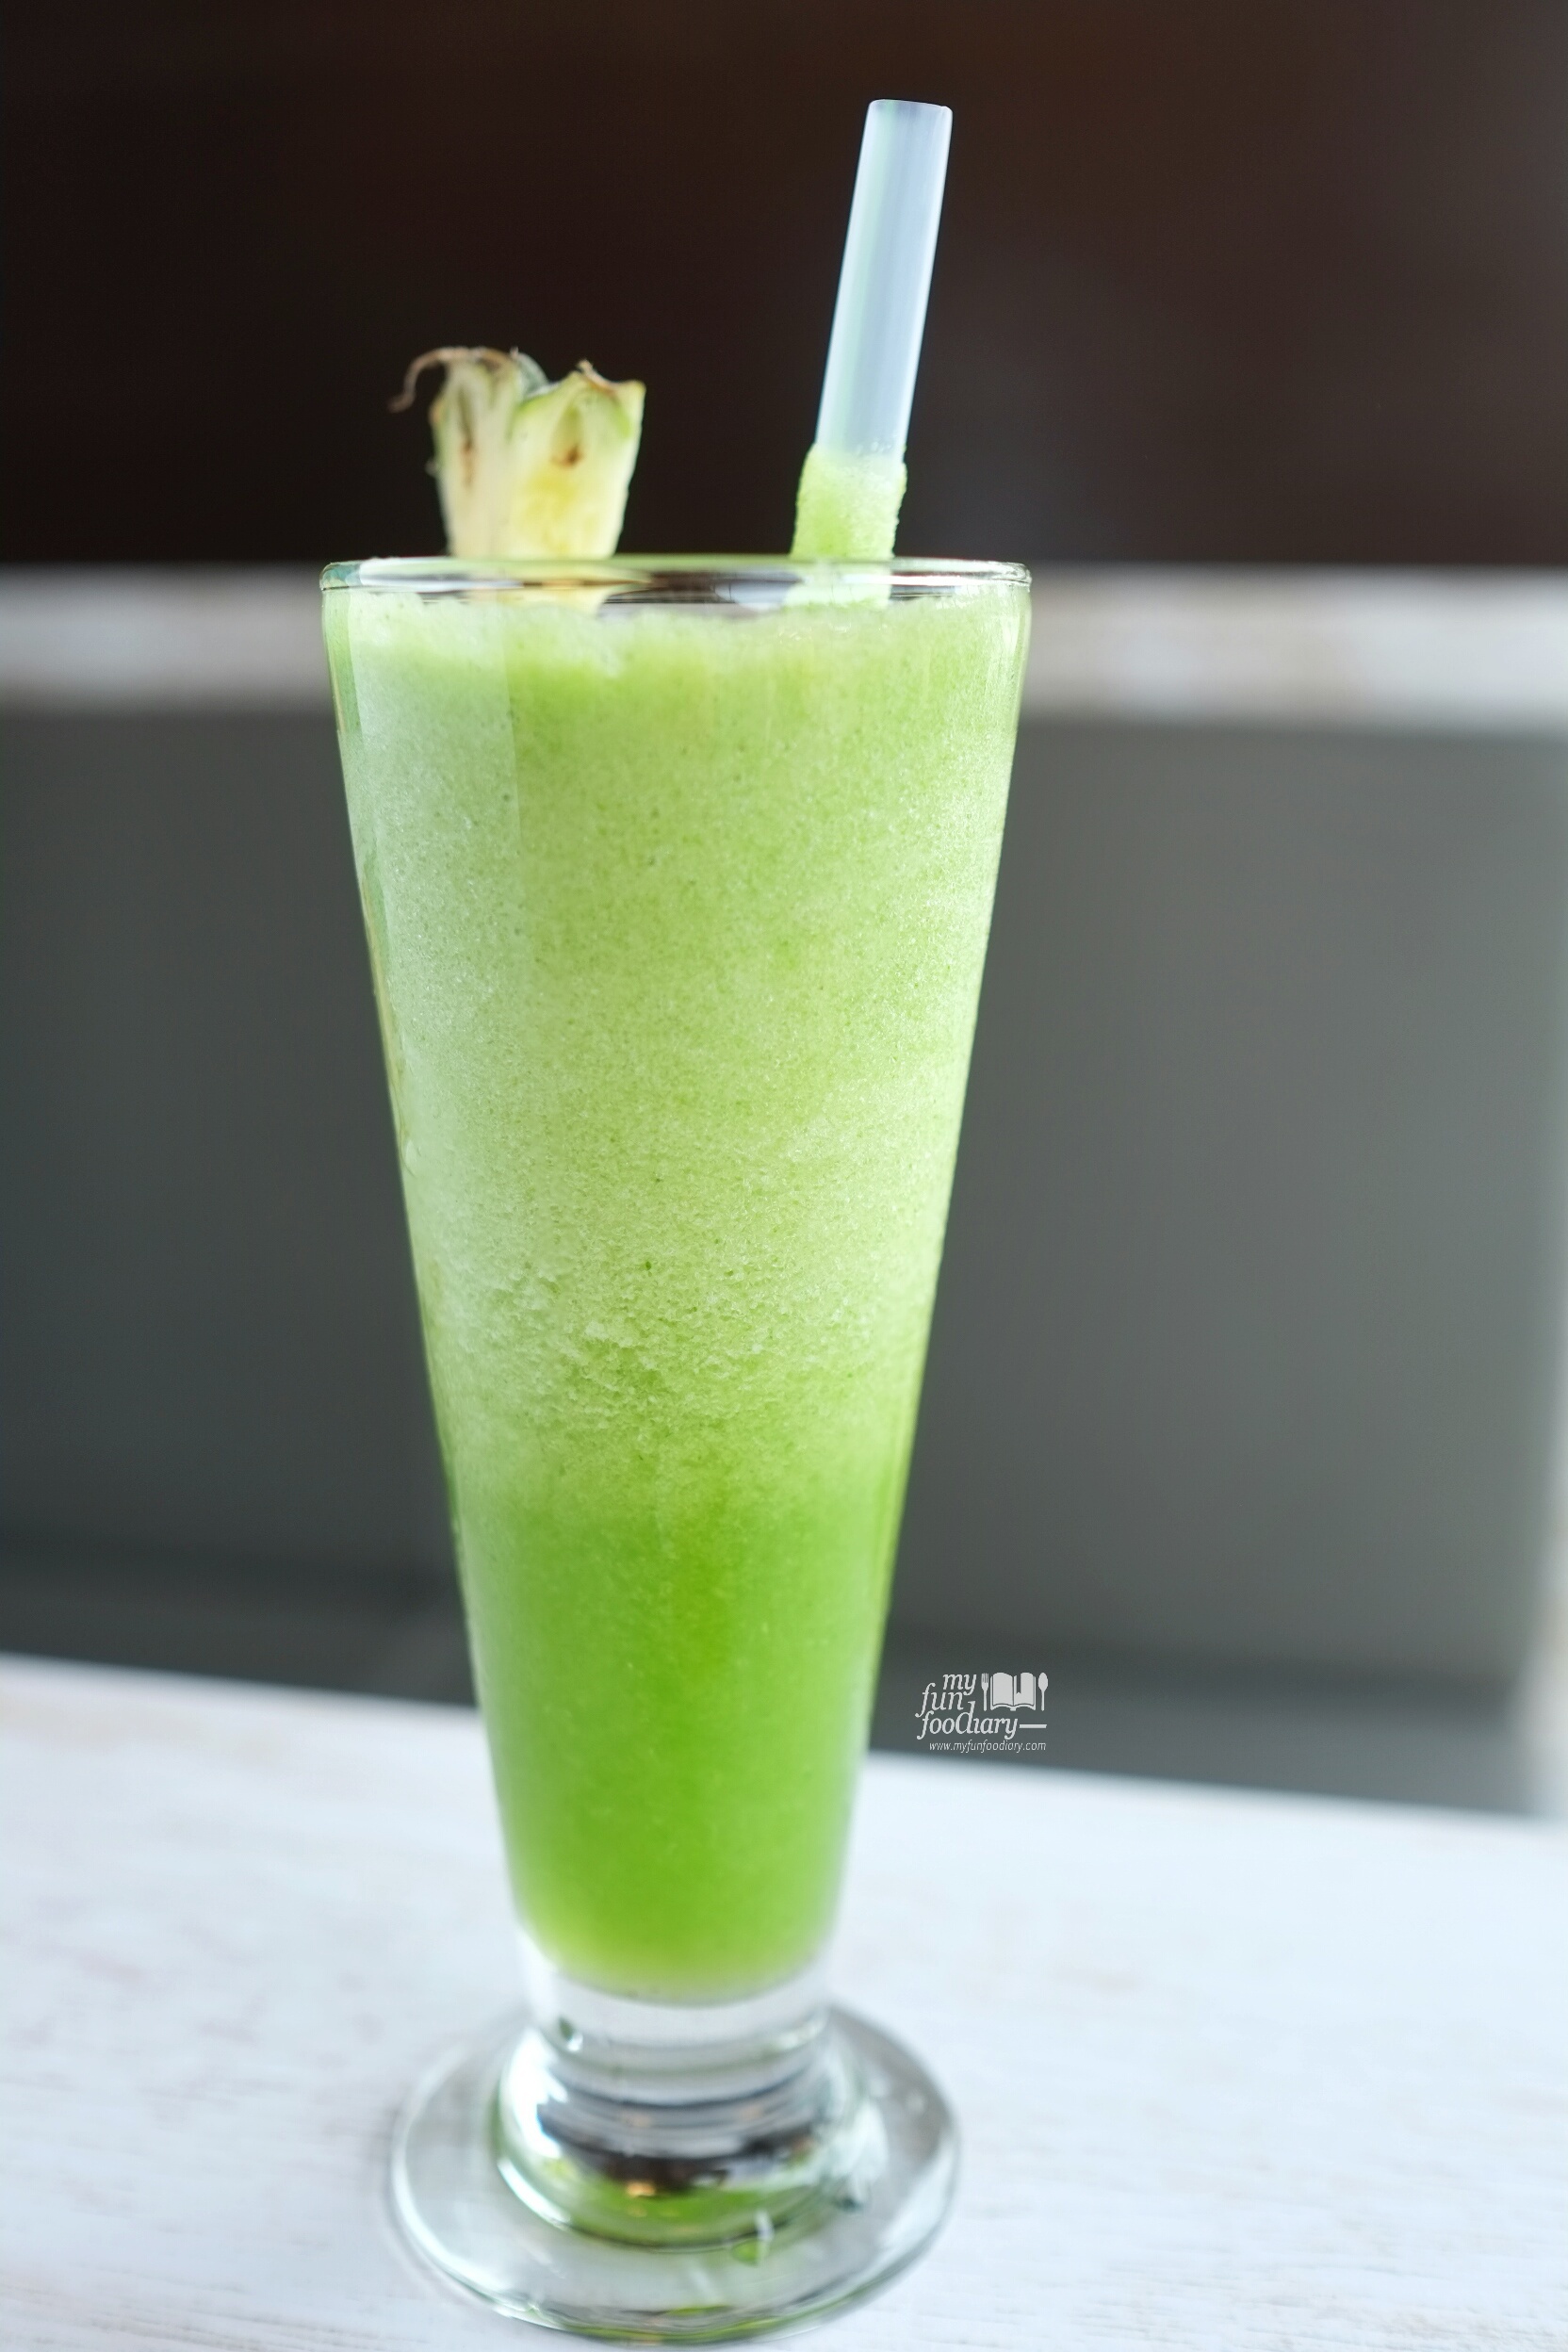 Green Juice at Shirayuki PIK by Myfunfoodiary